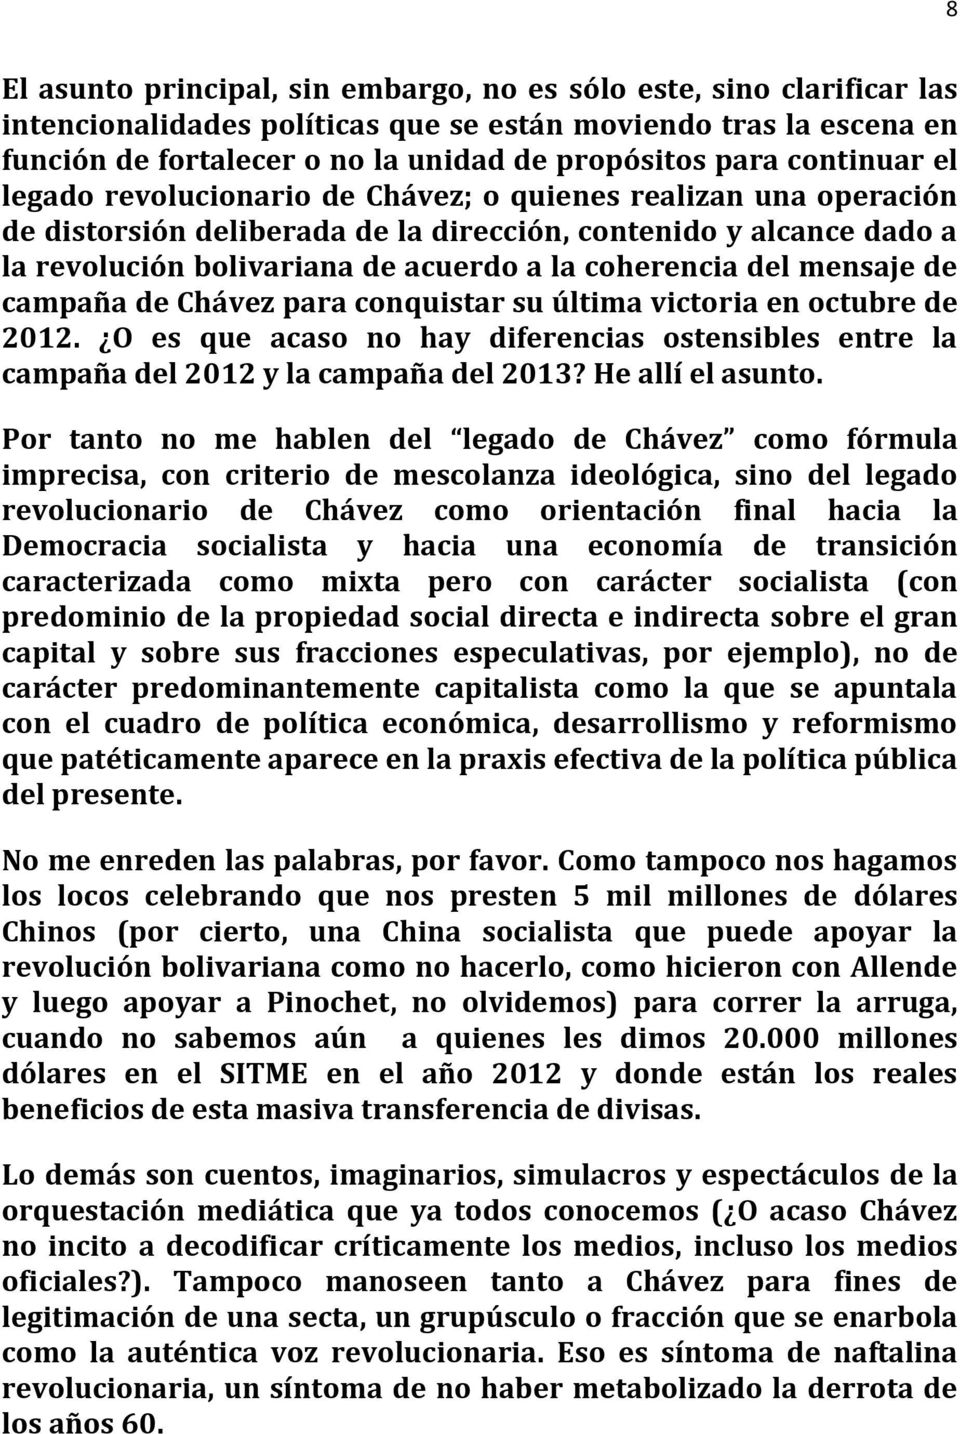 coherencia del mensaje de campaña de Chávez para conquistar su última victoria en octubre de 2012. O es que acaso no hay diferencias ostensibles entre la campaña del 2012 y la campaña del 2013?